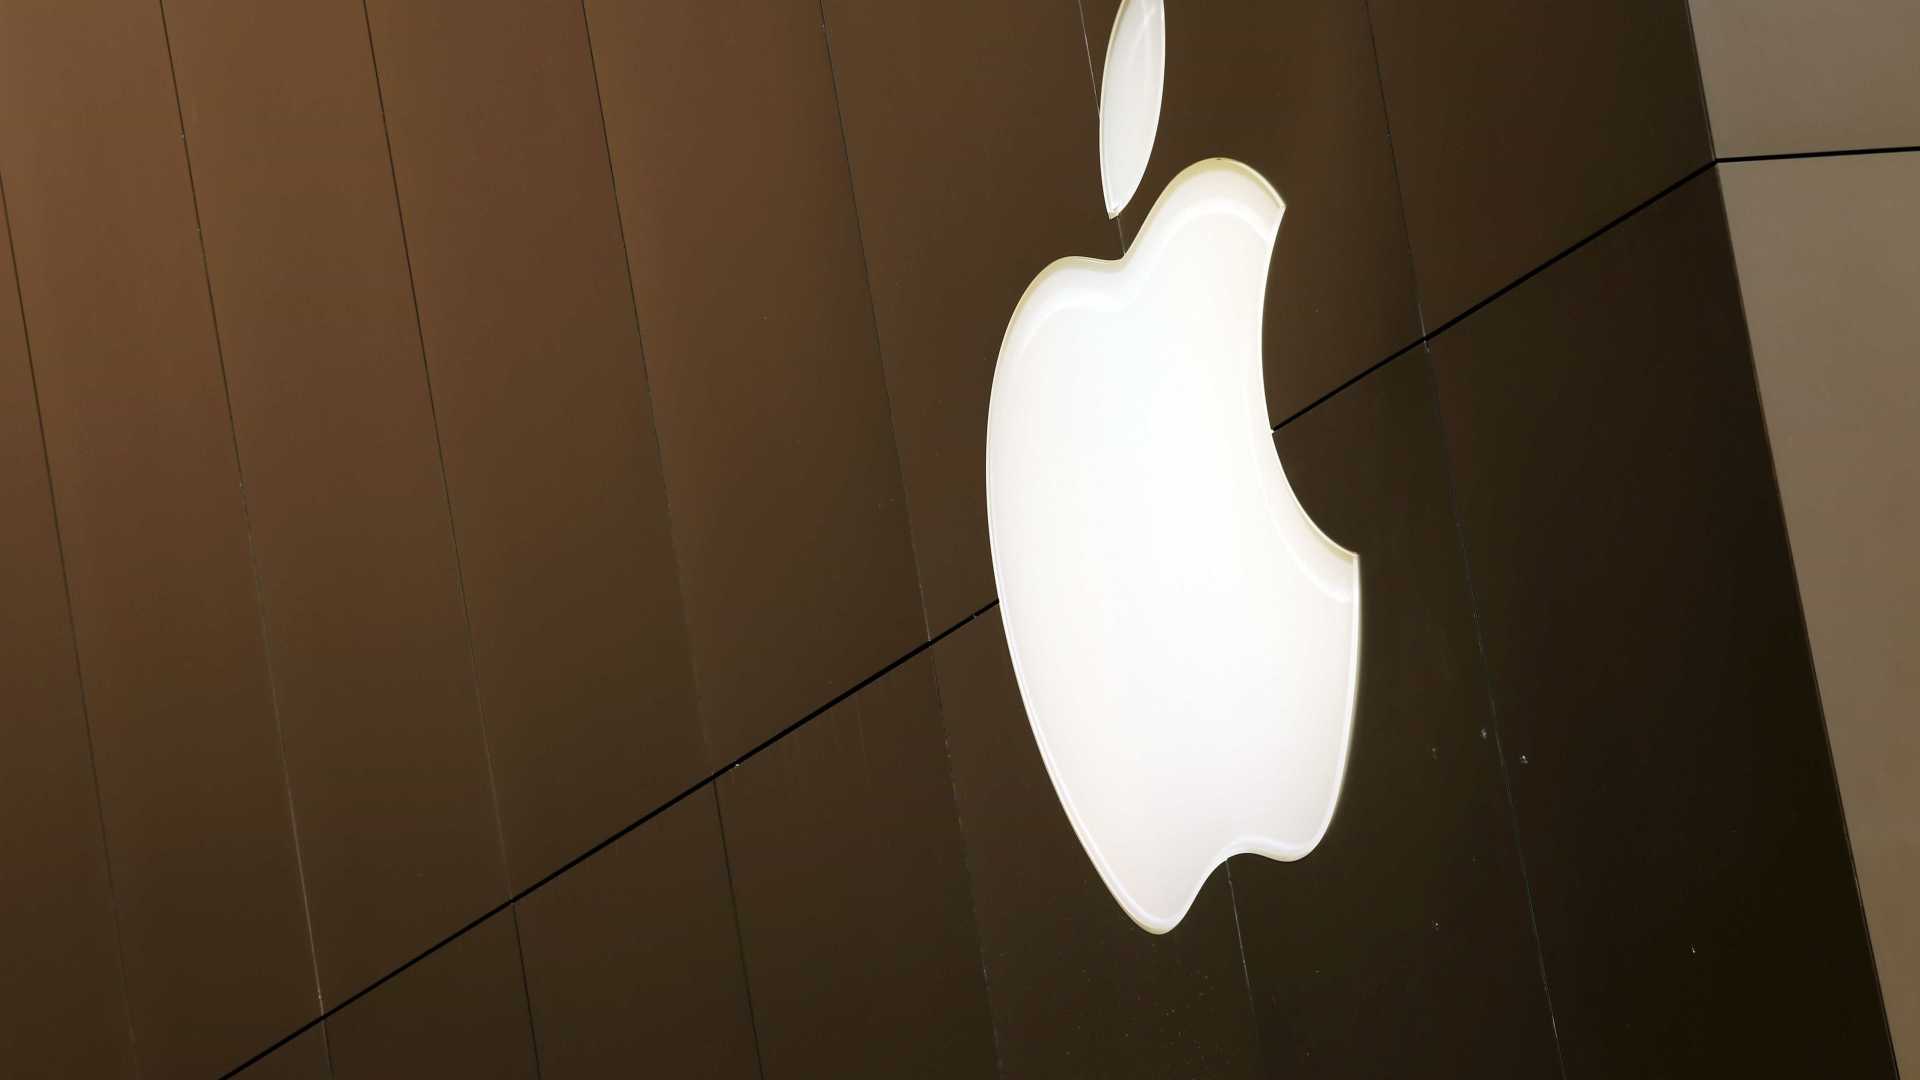 Apple presenterà cinque nuovi iPad e cinque nuovi Mac entro il 2018